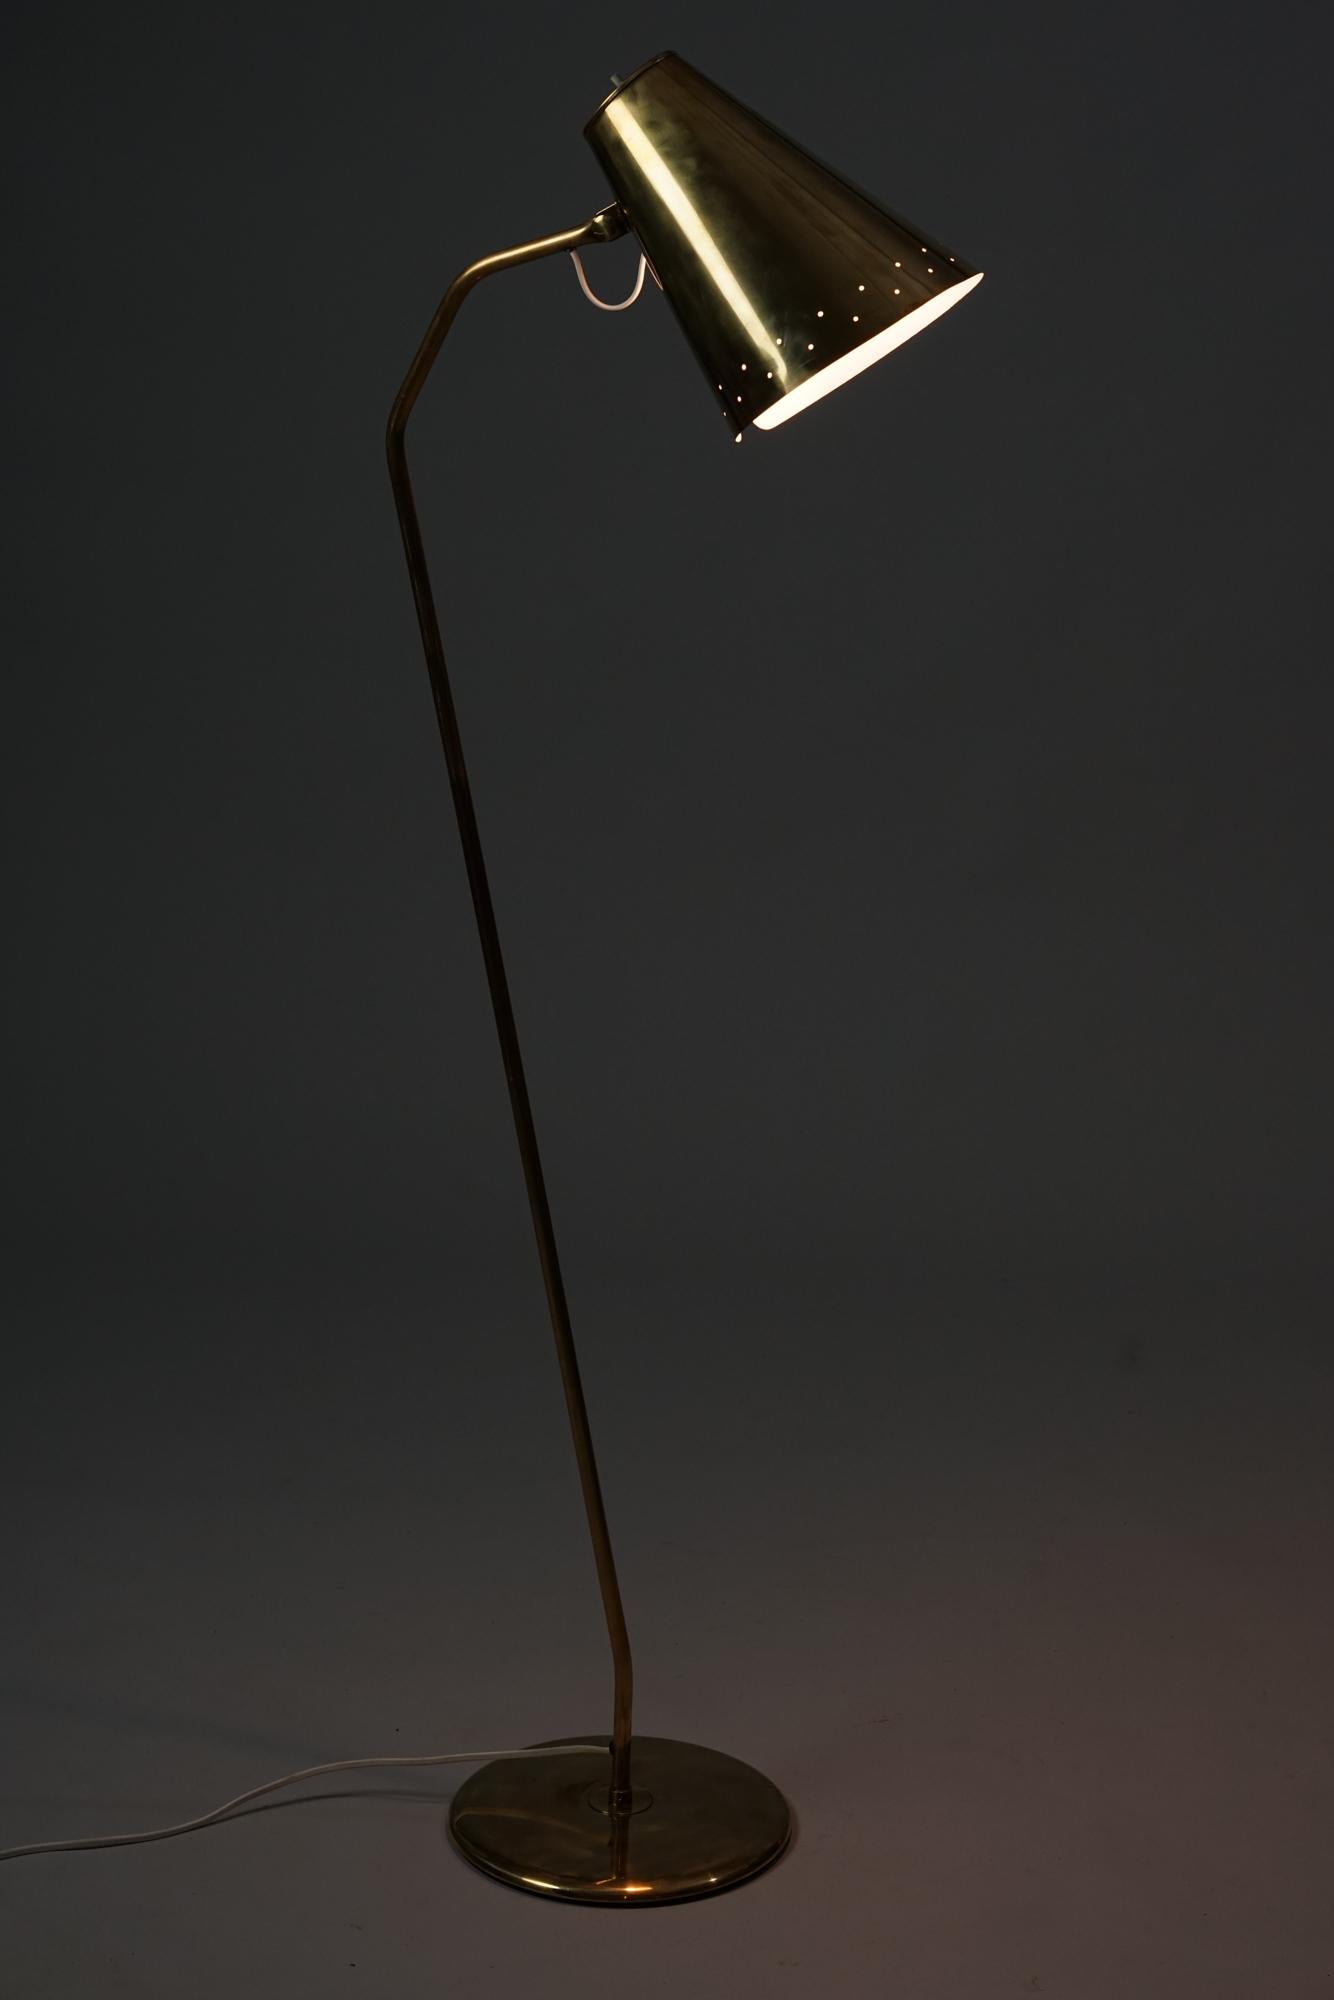 Finnische Stehlampe aus Messing im Stil von Paavo Tynell aus den 1950er Jahren. Messing. Guter Vintage-Zustand, leichte Patina im Einklang mit Alter und Gebrauch. Schöne Stehlampe im skandinavisch-modernen Stil. 

Diese zierliche Stehlampe zeichnet